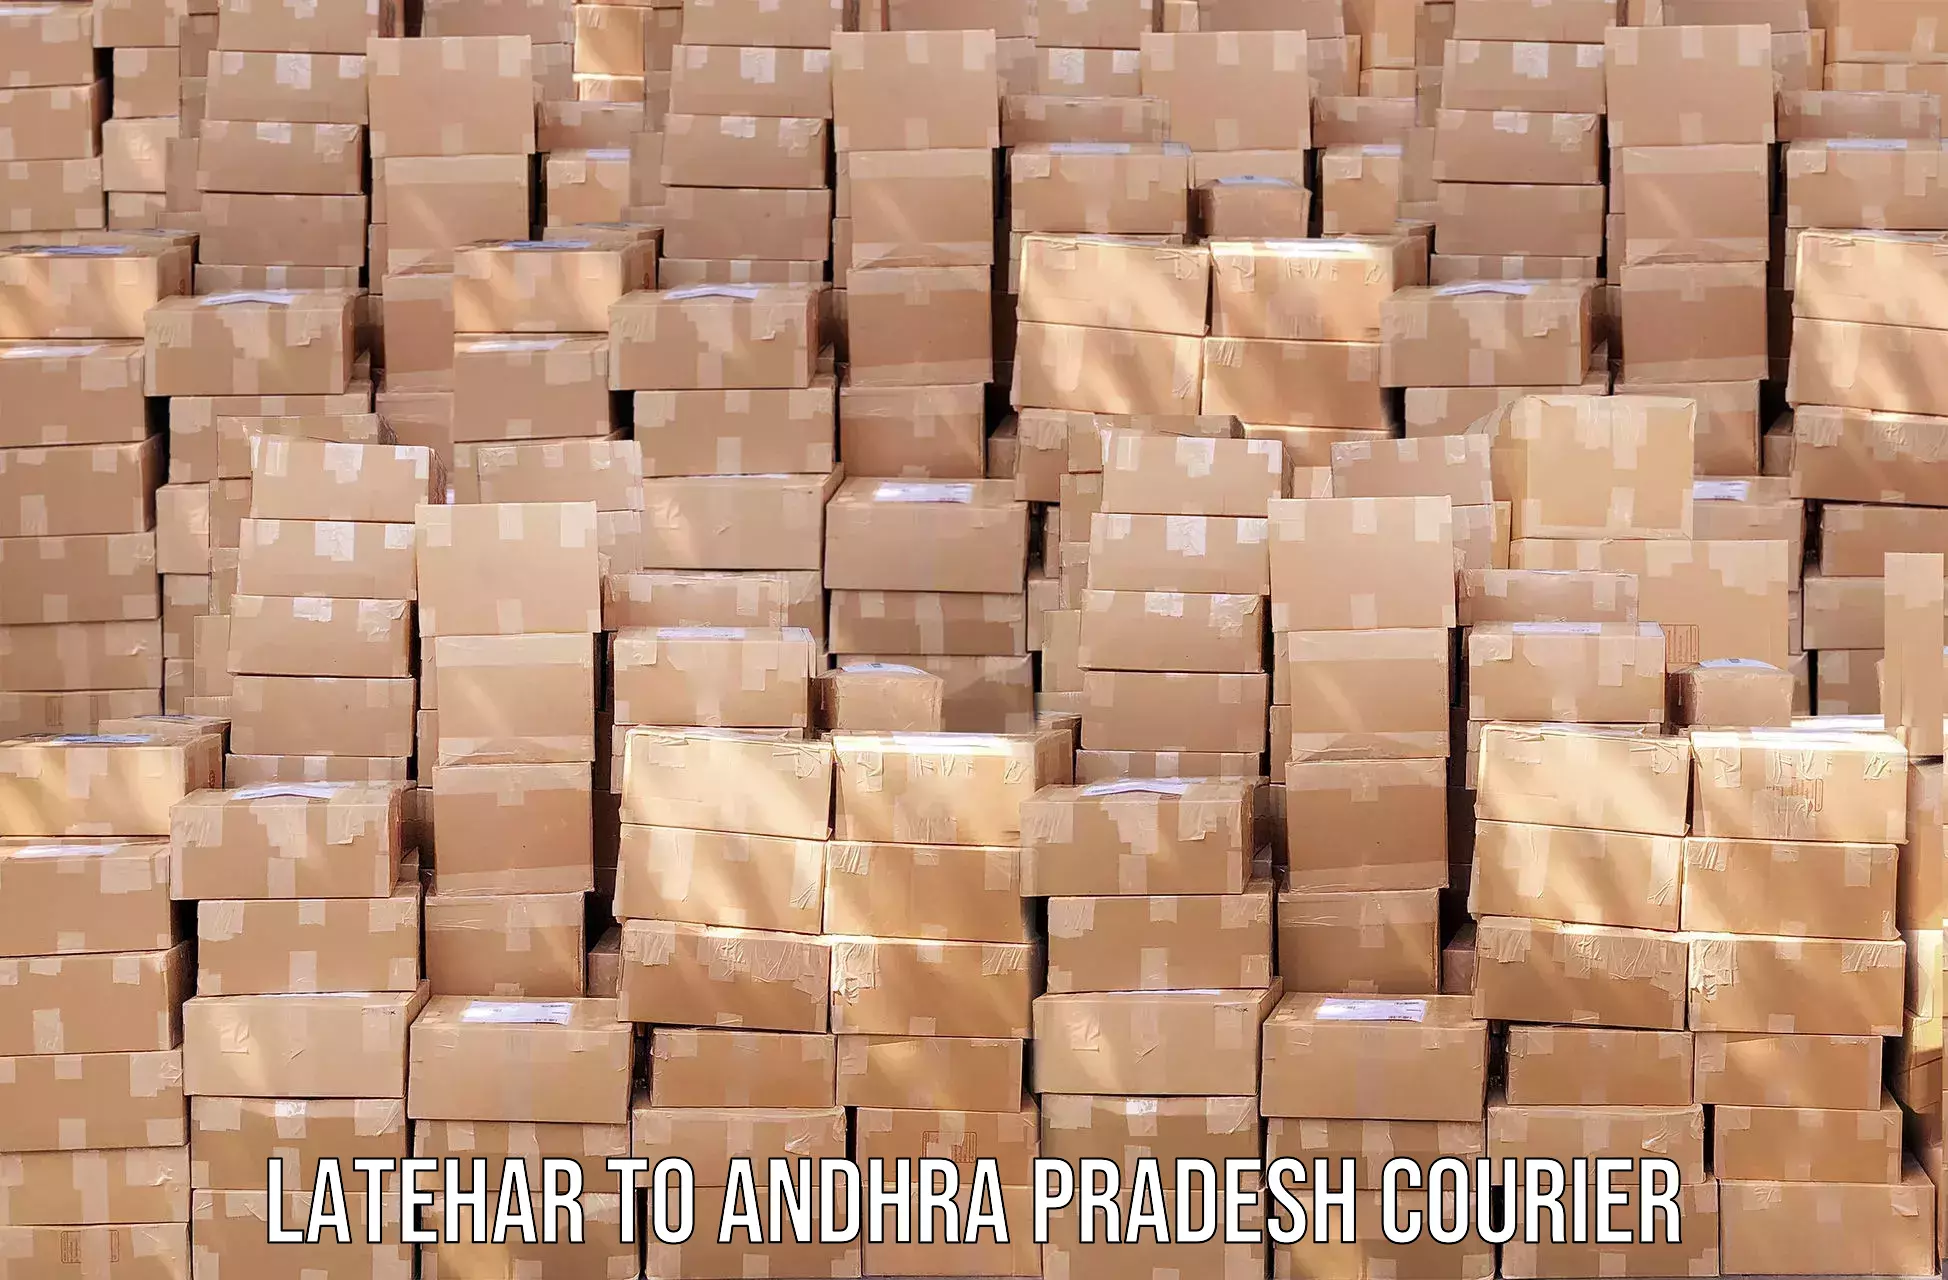 High value parcel delivery in Latehar to Puttur Tirupati